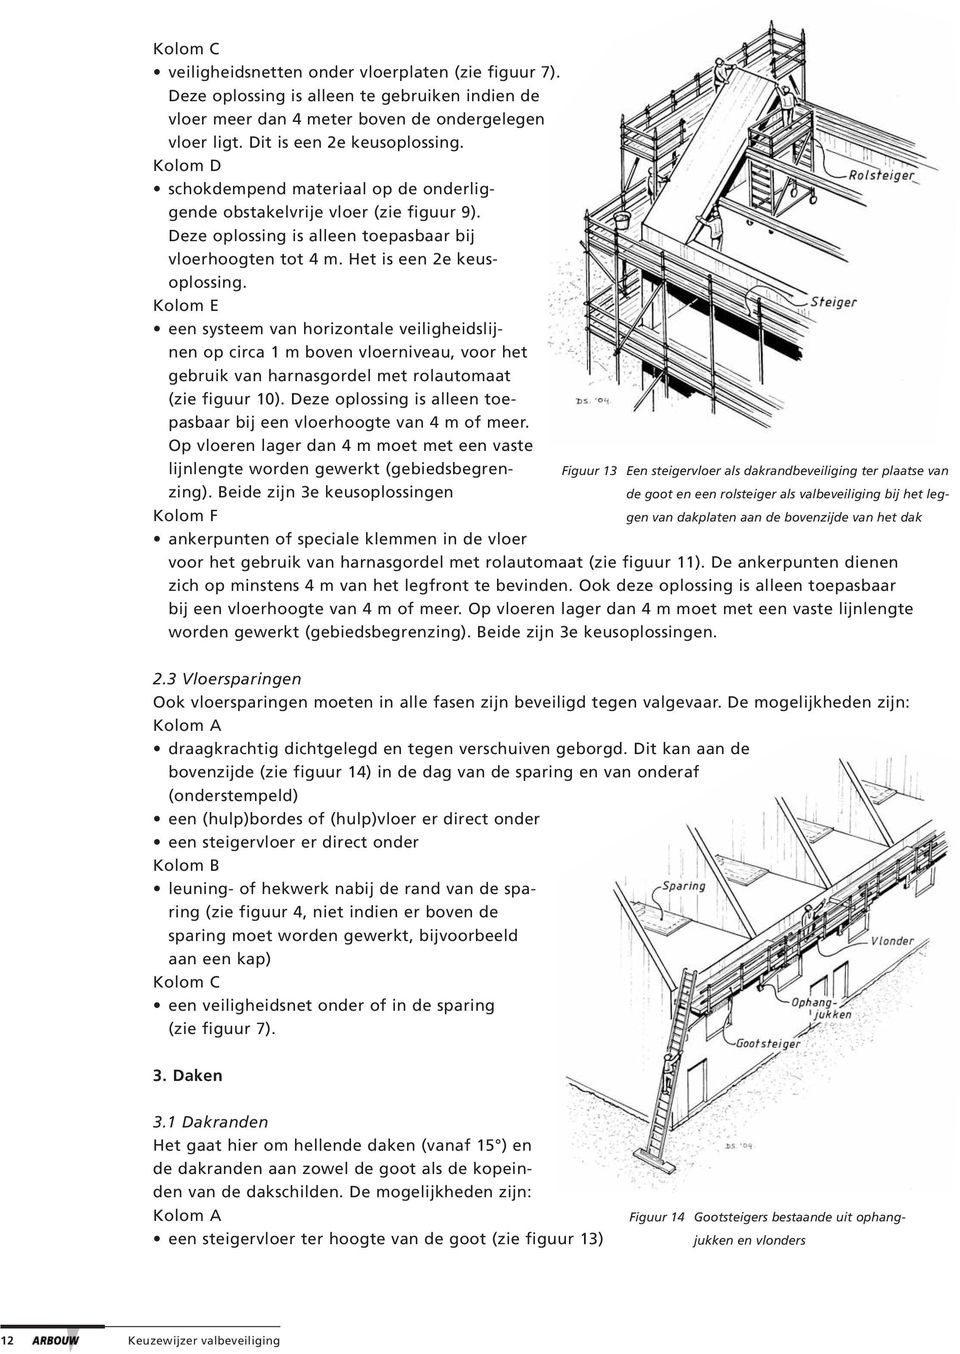 Kolom E een systeem van horizontale veiligheidslijnen op circa 1 m boven vloerniveau, voor het gebruik van harnasgordel met rolautomaat (zie figuur 10).